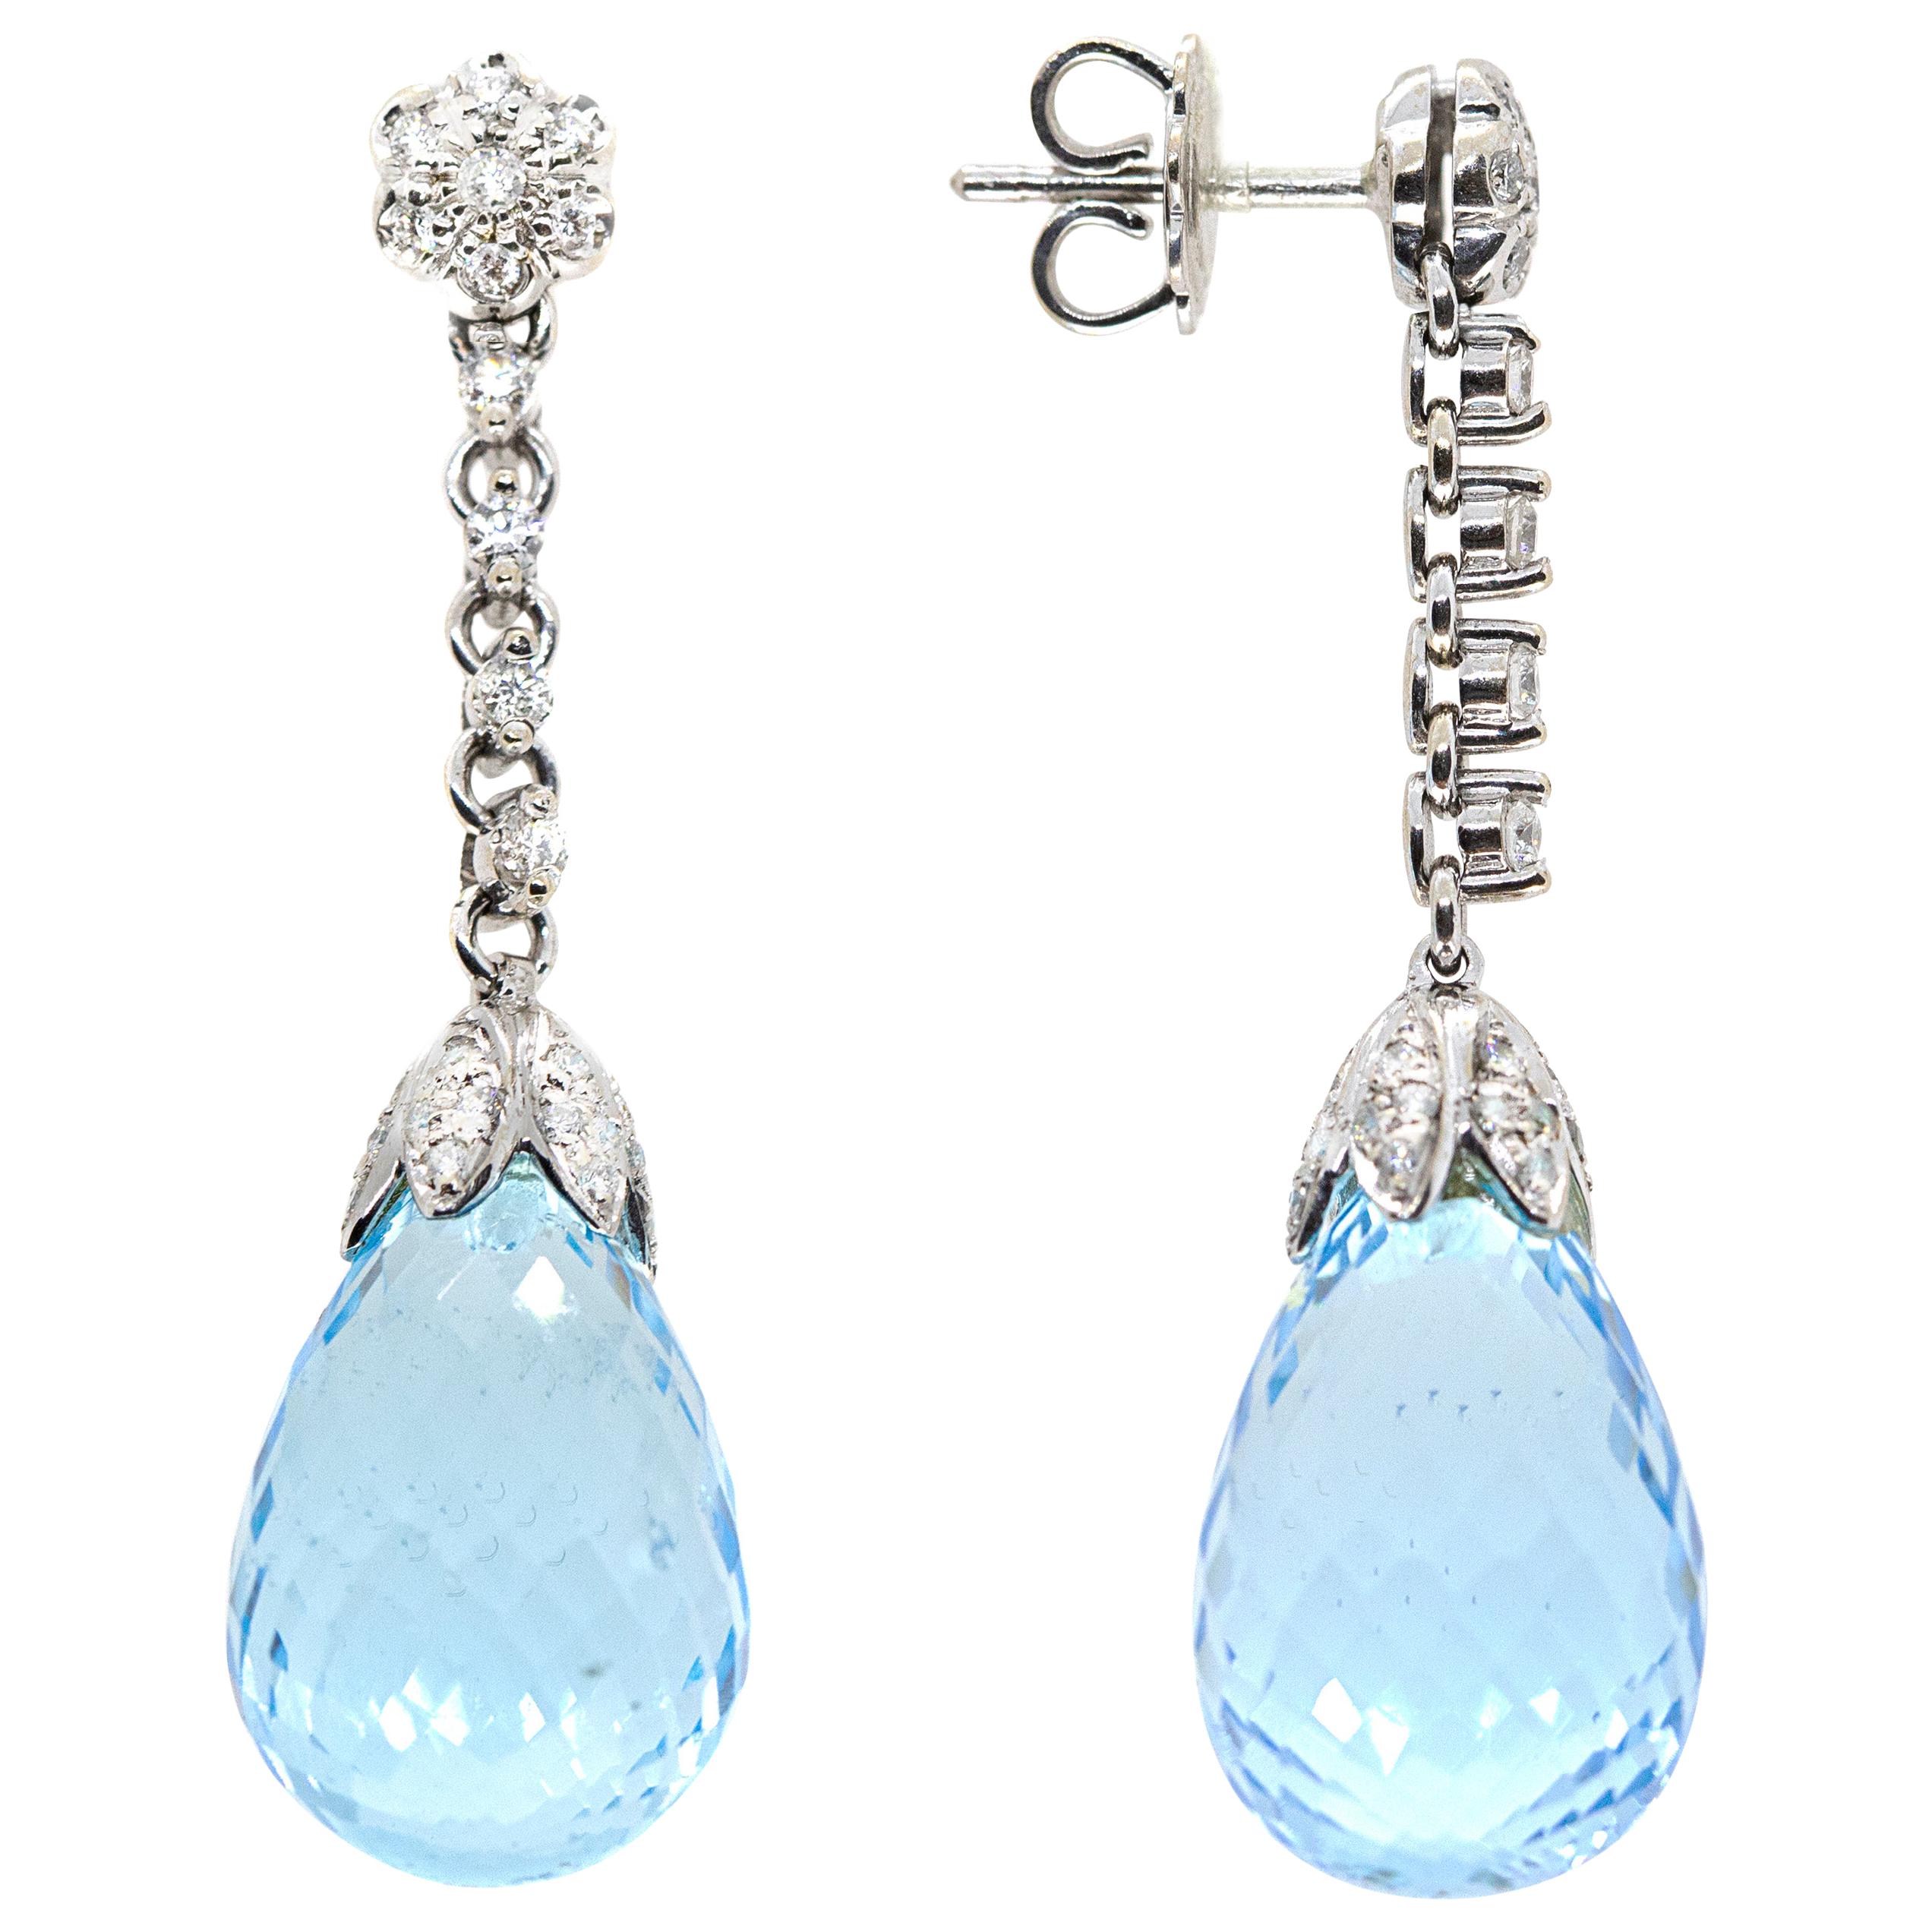 21st Century 18 Karat White Gold Blue Topaz and White Diamond Earrings For Sale